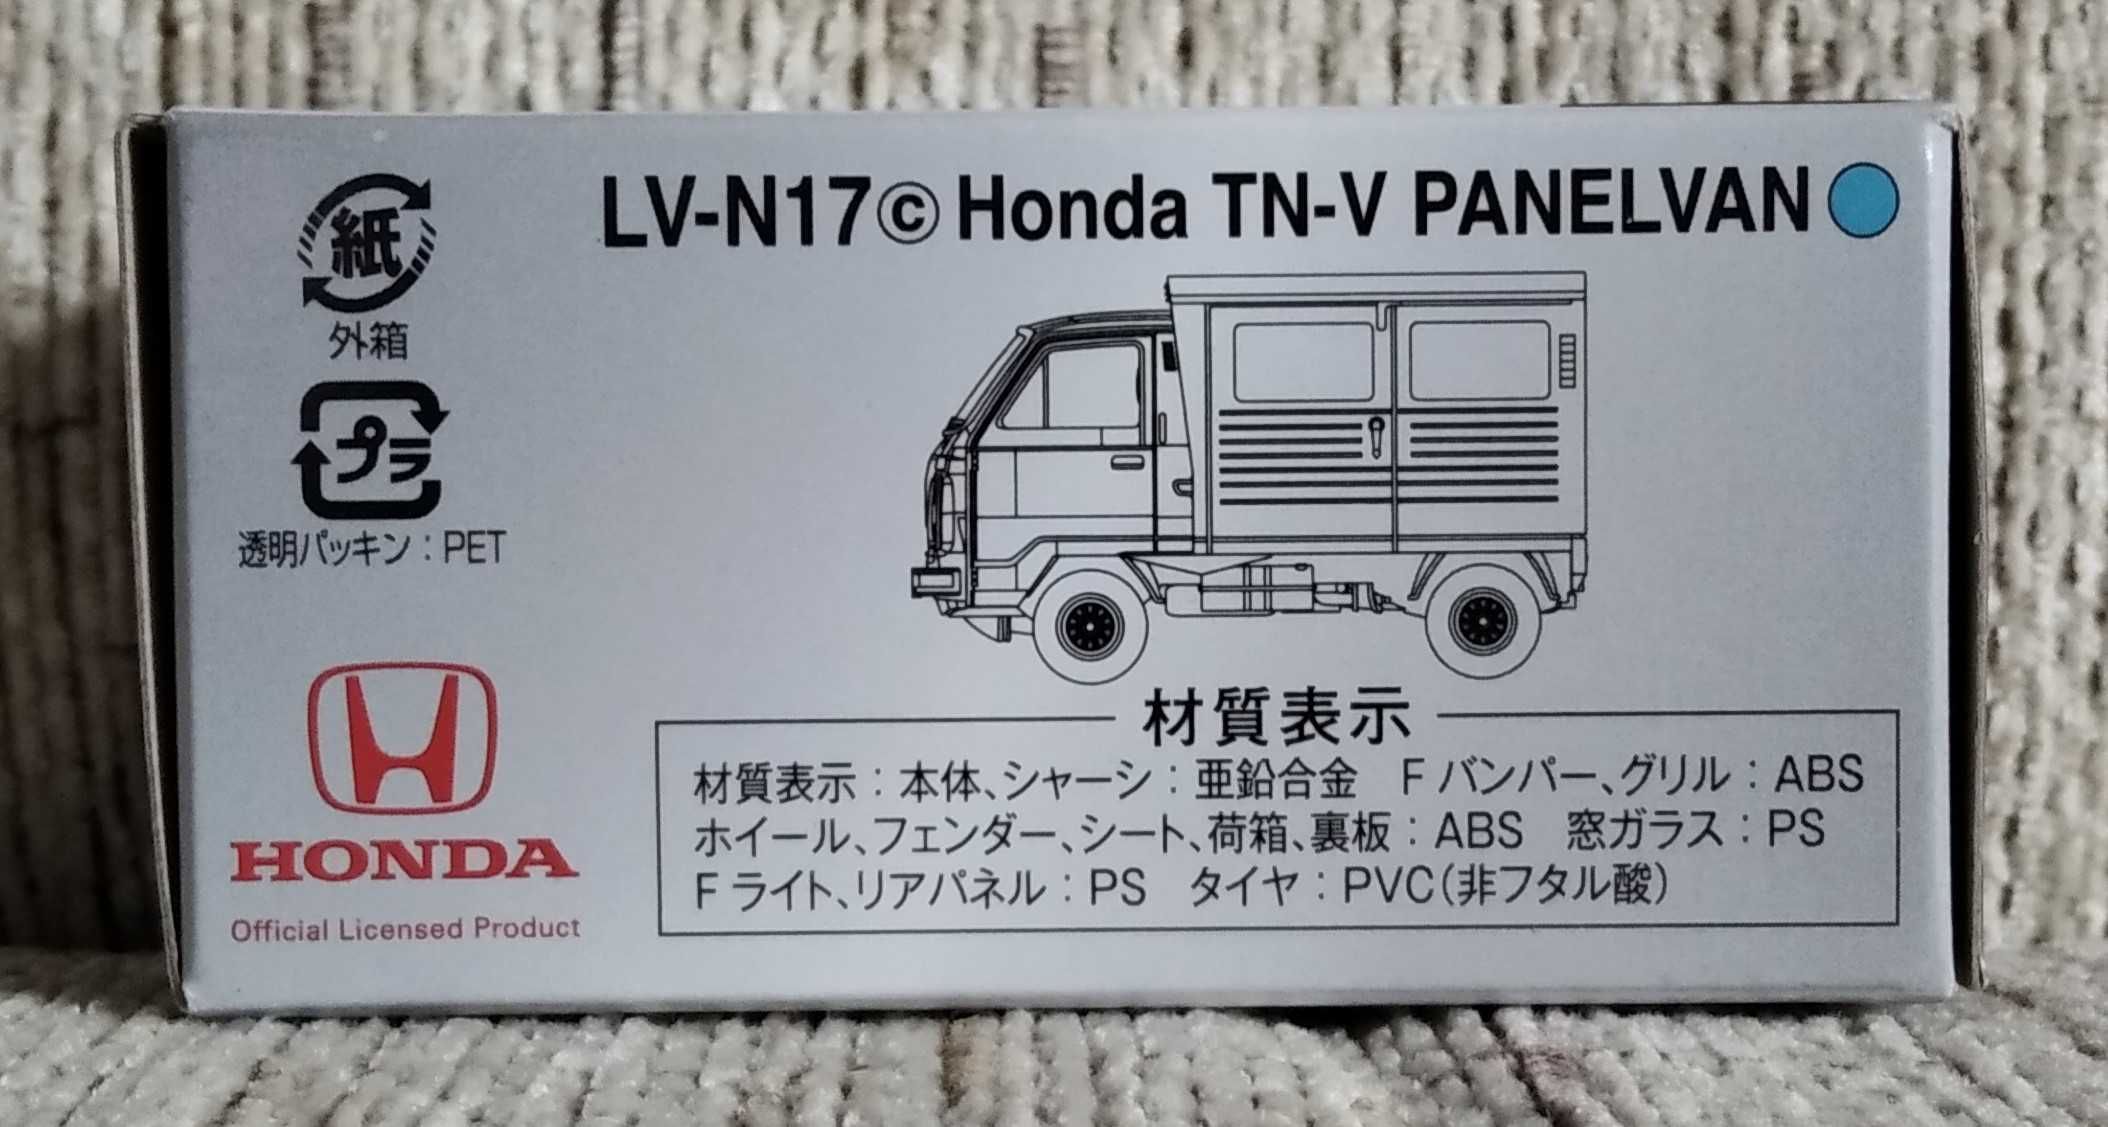 Tomica Limited Vintage Neo LV-N17c Honda TN-V Panel Van Standard